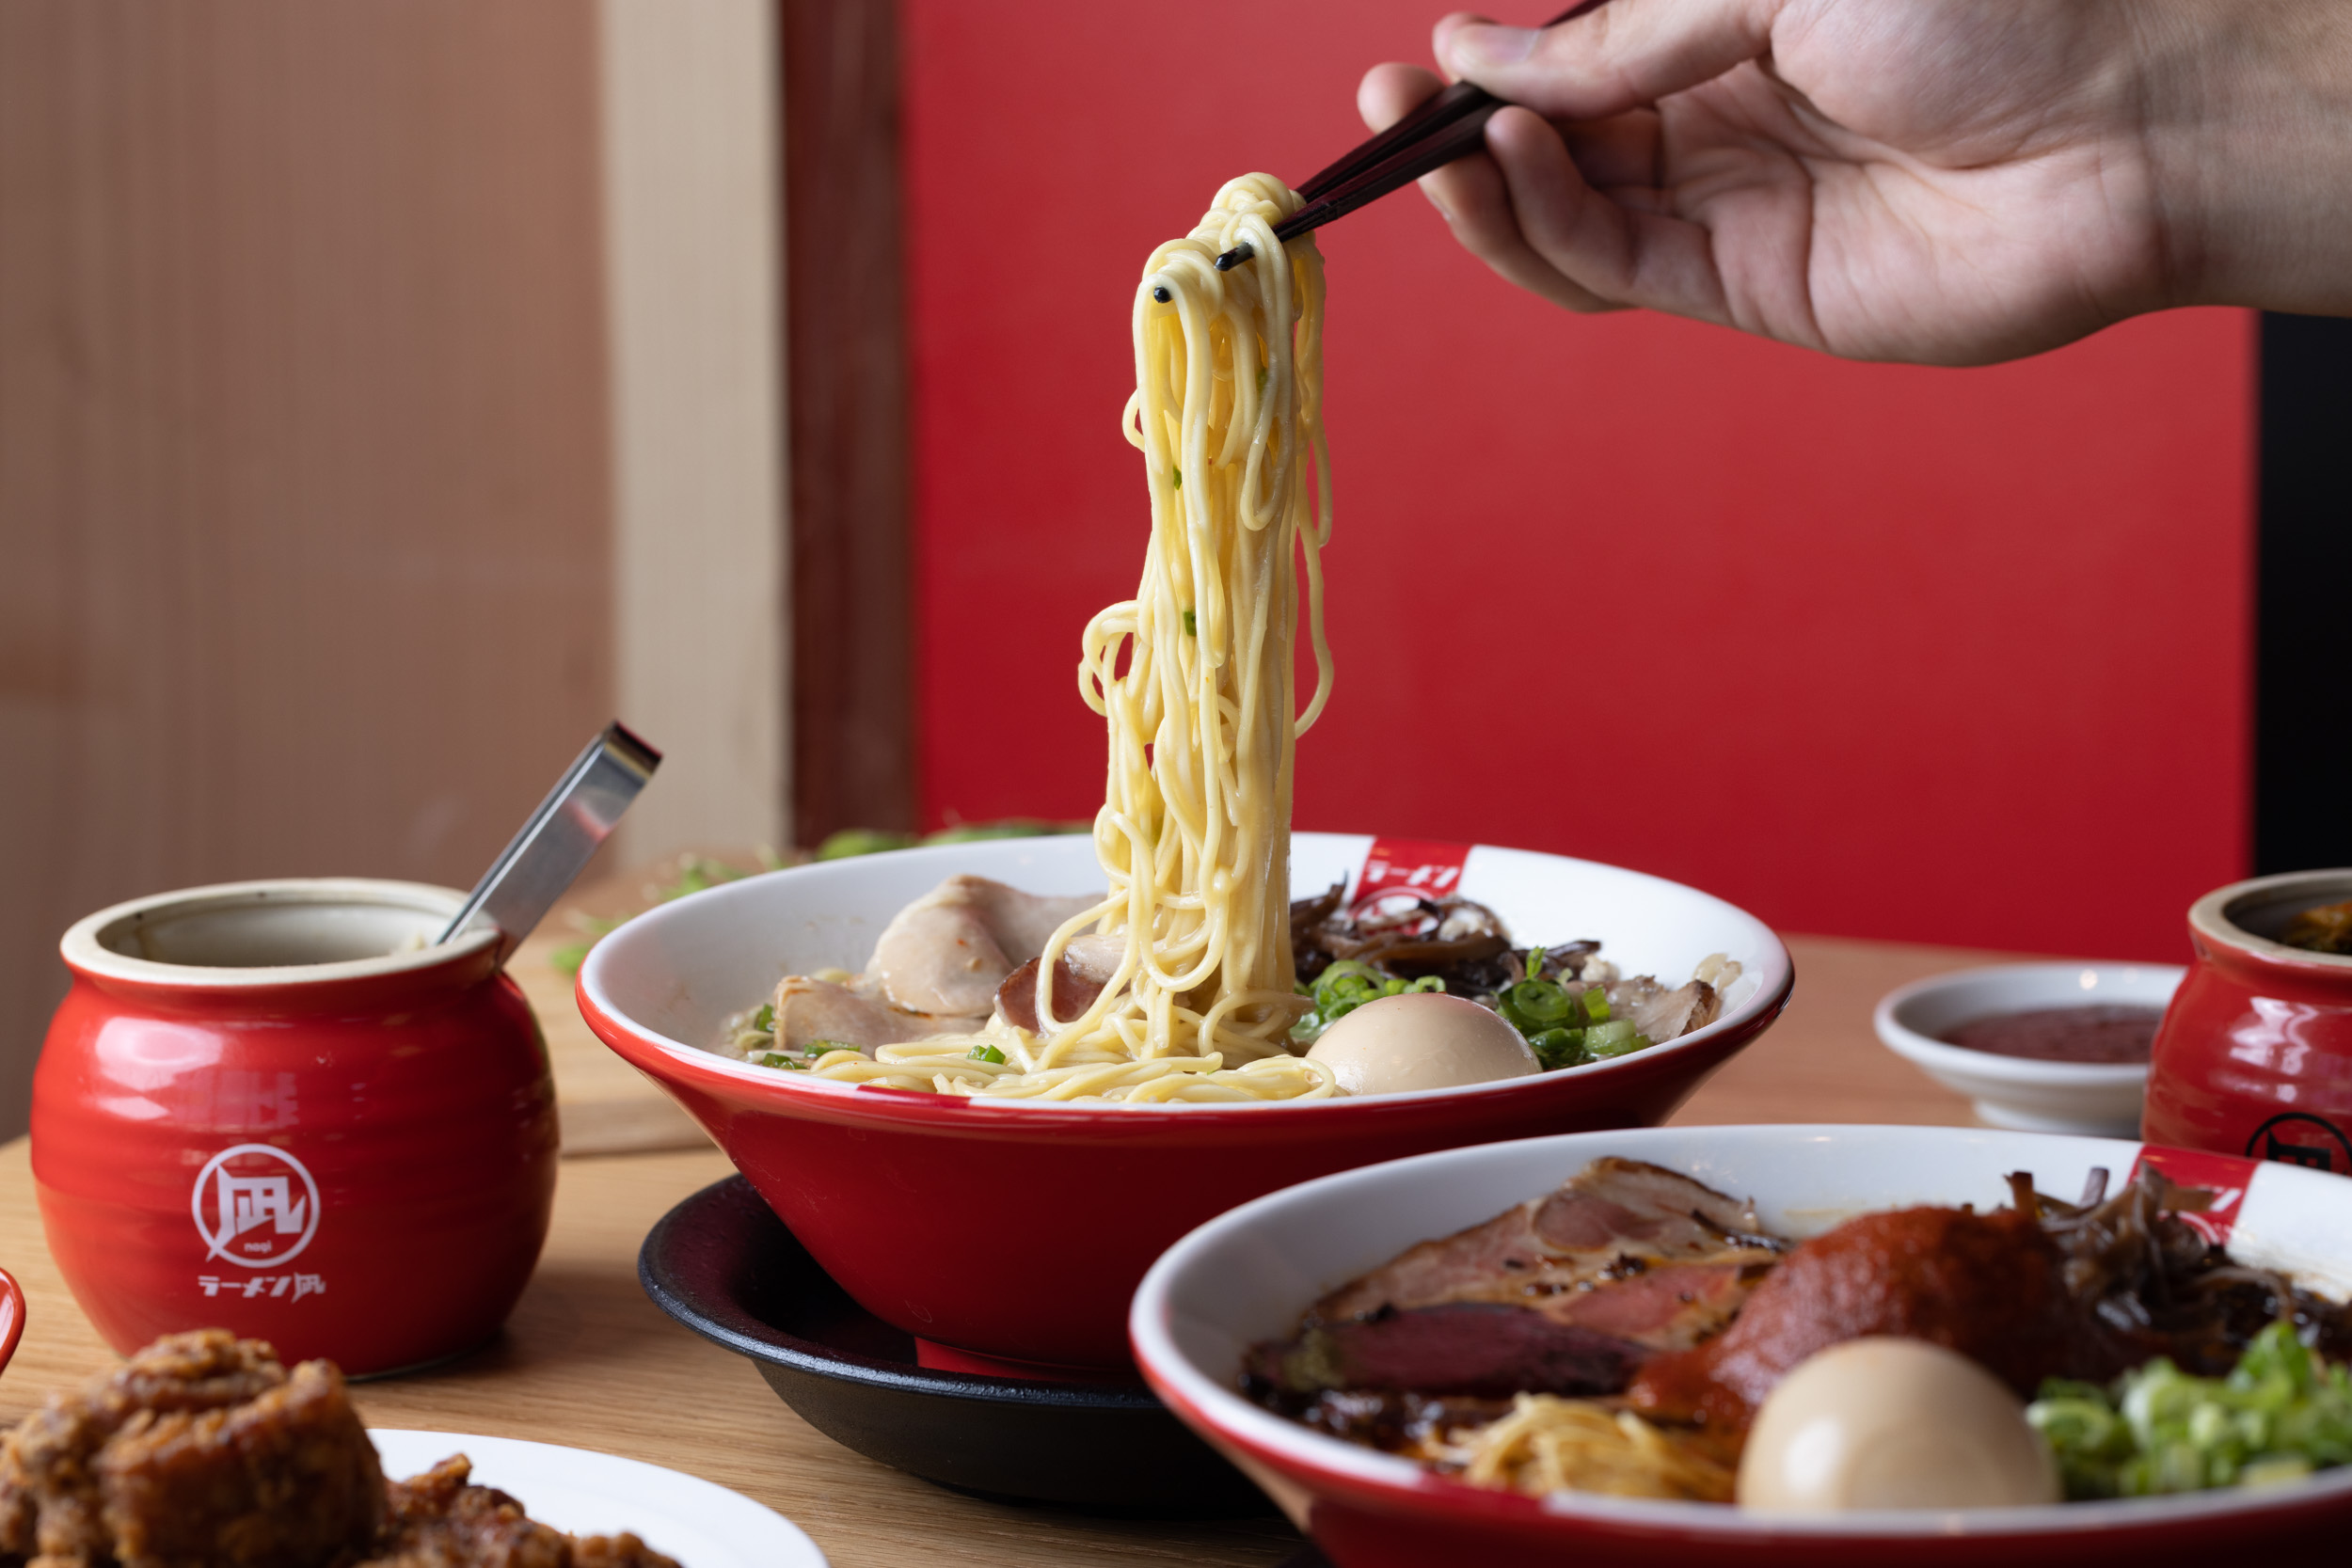 A hand holding chopsticks lifts noodles from a bowl of ramen.